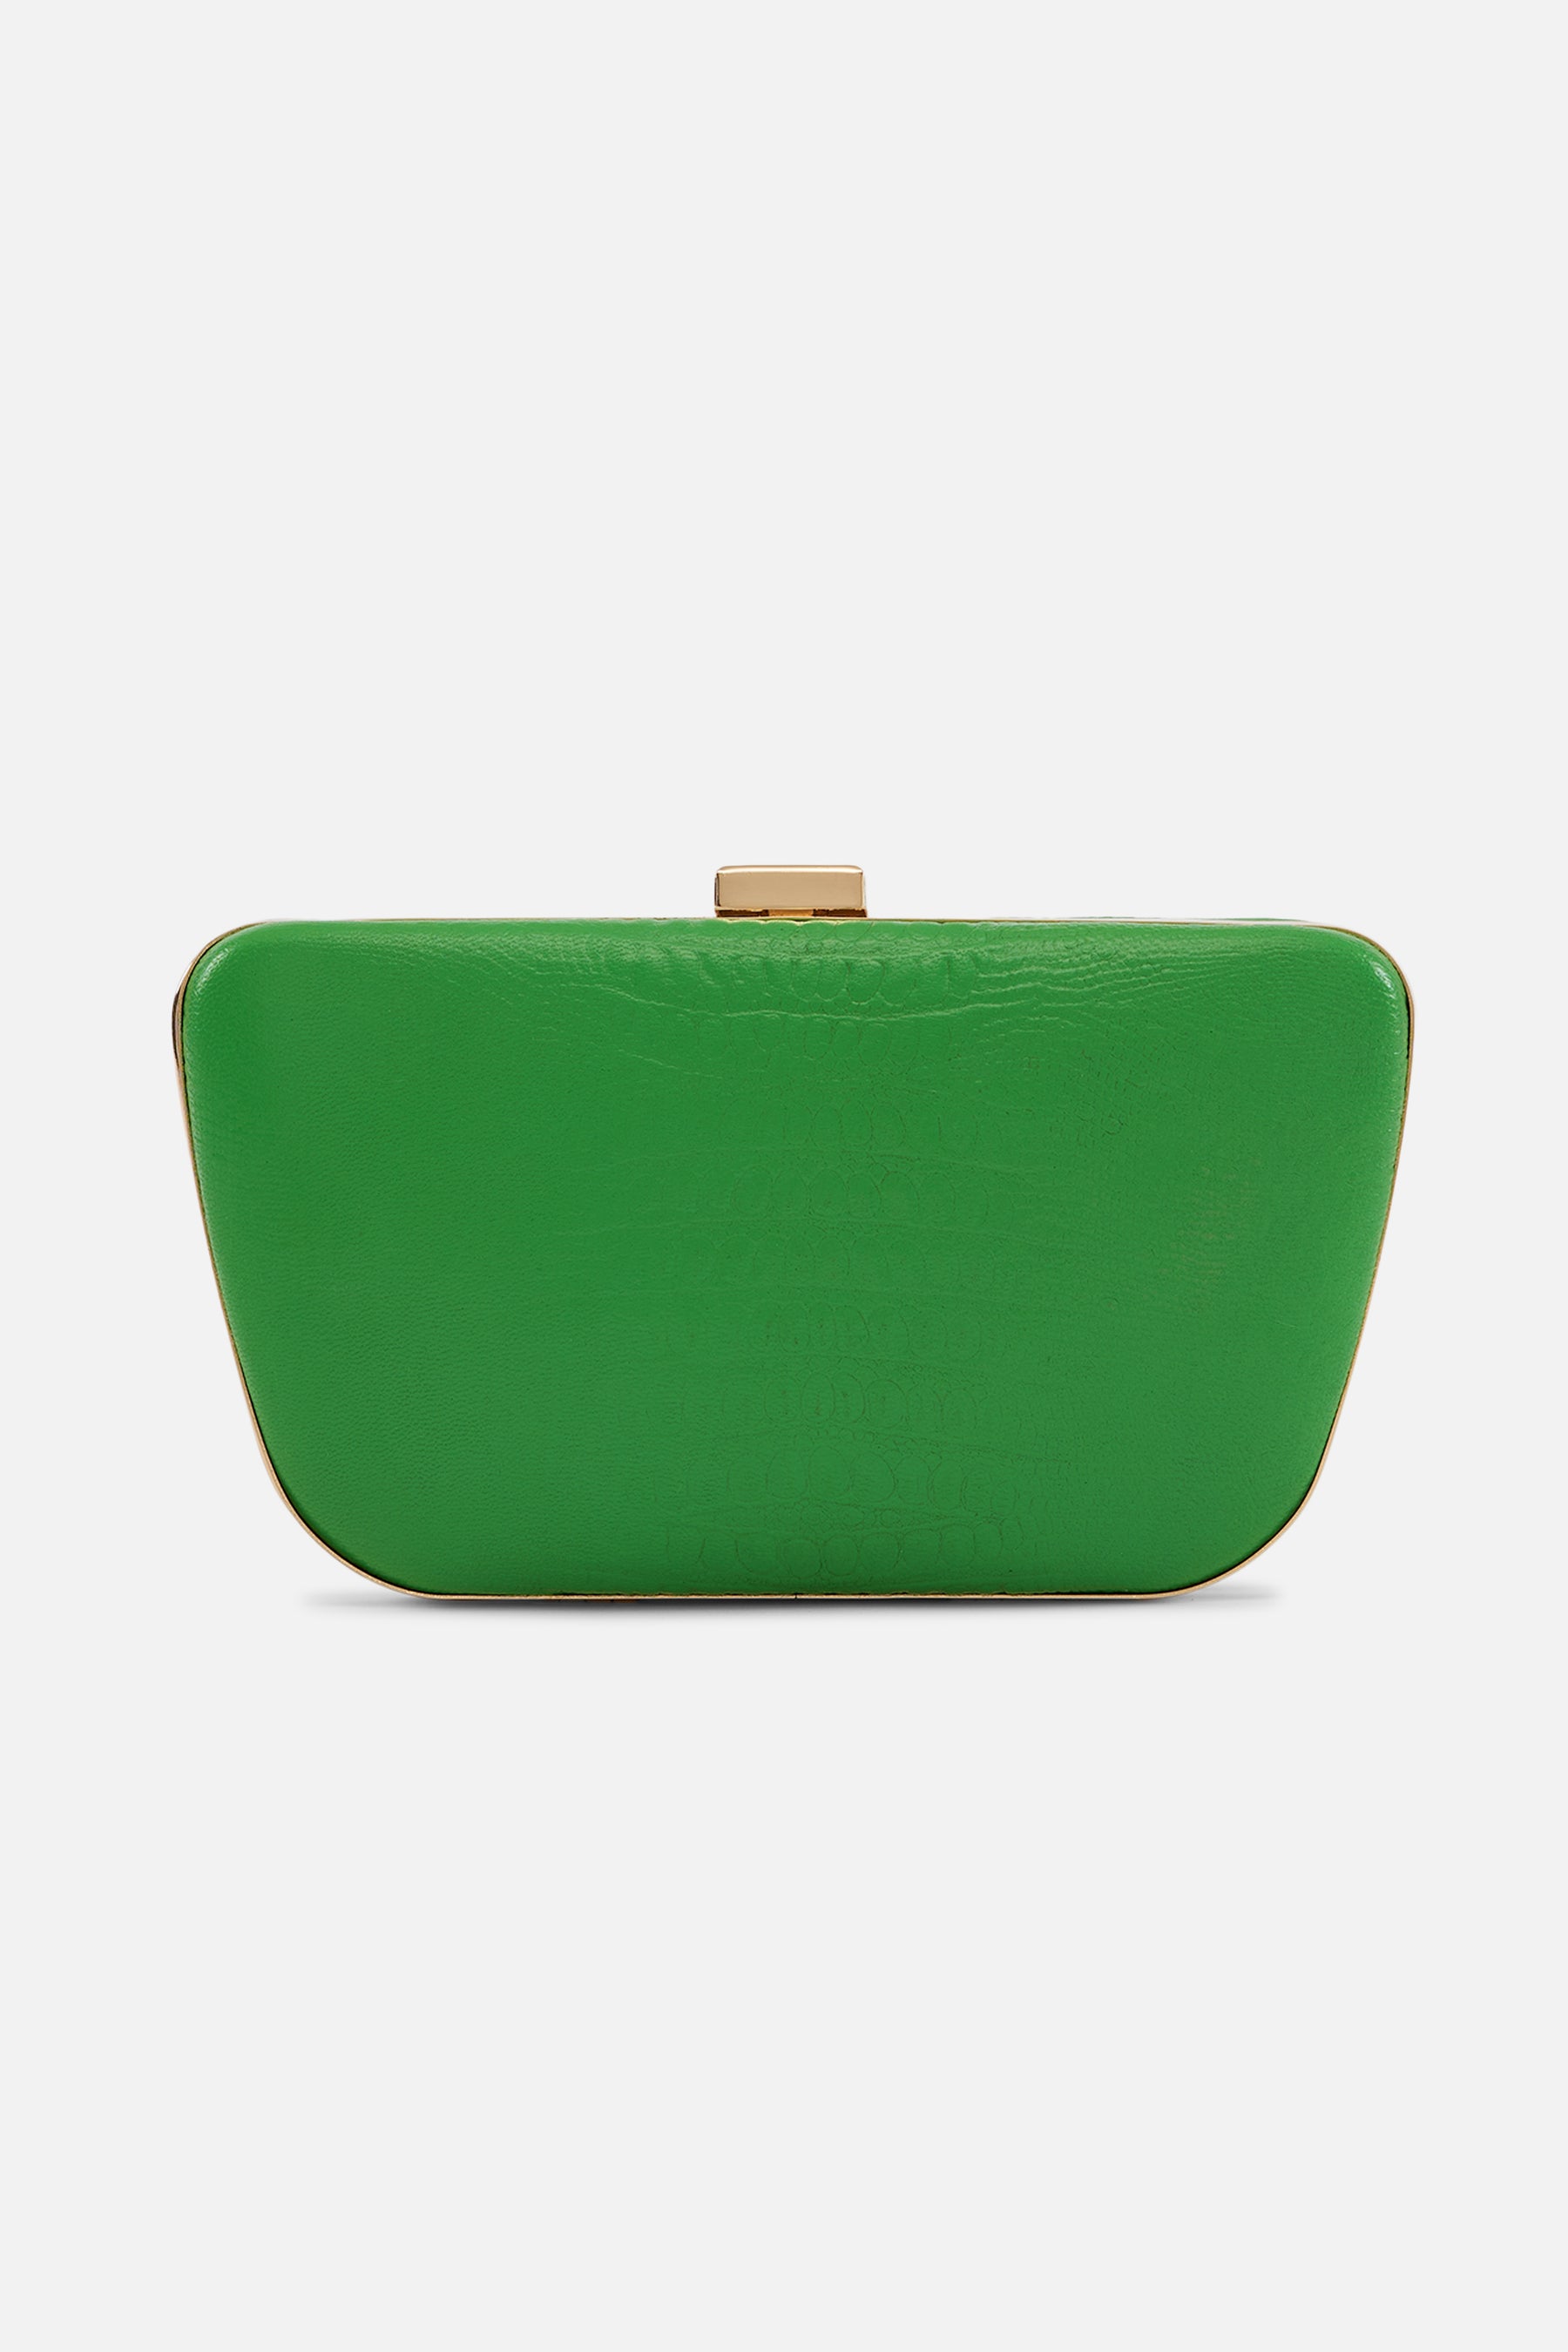 Camila - Leather Box Clutch Bag - Croco Lawn Green